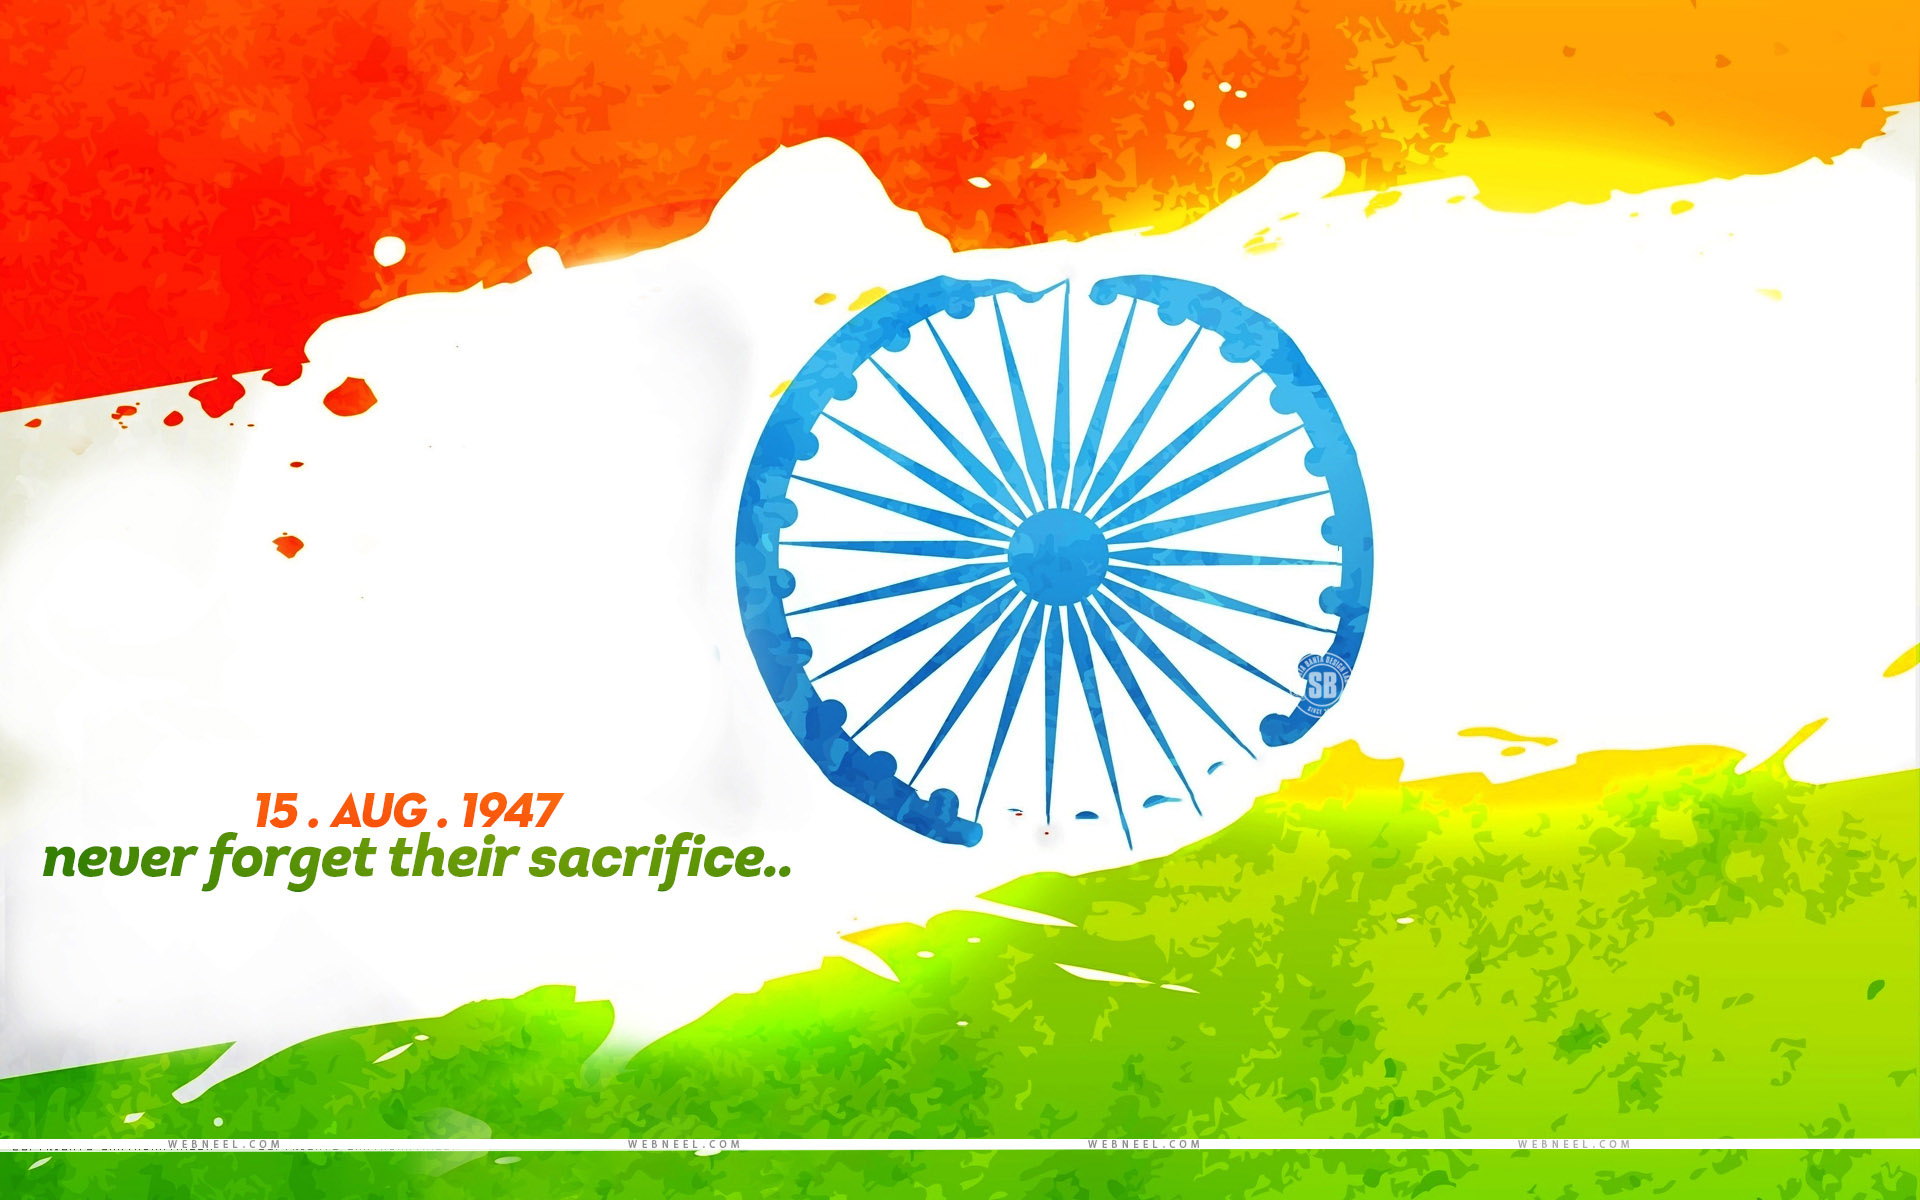 Indian National Flag Wallpaper For Facebook